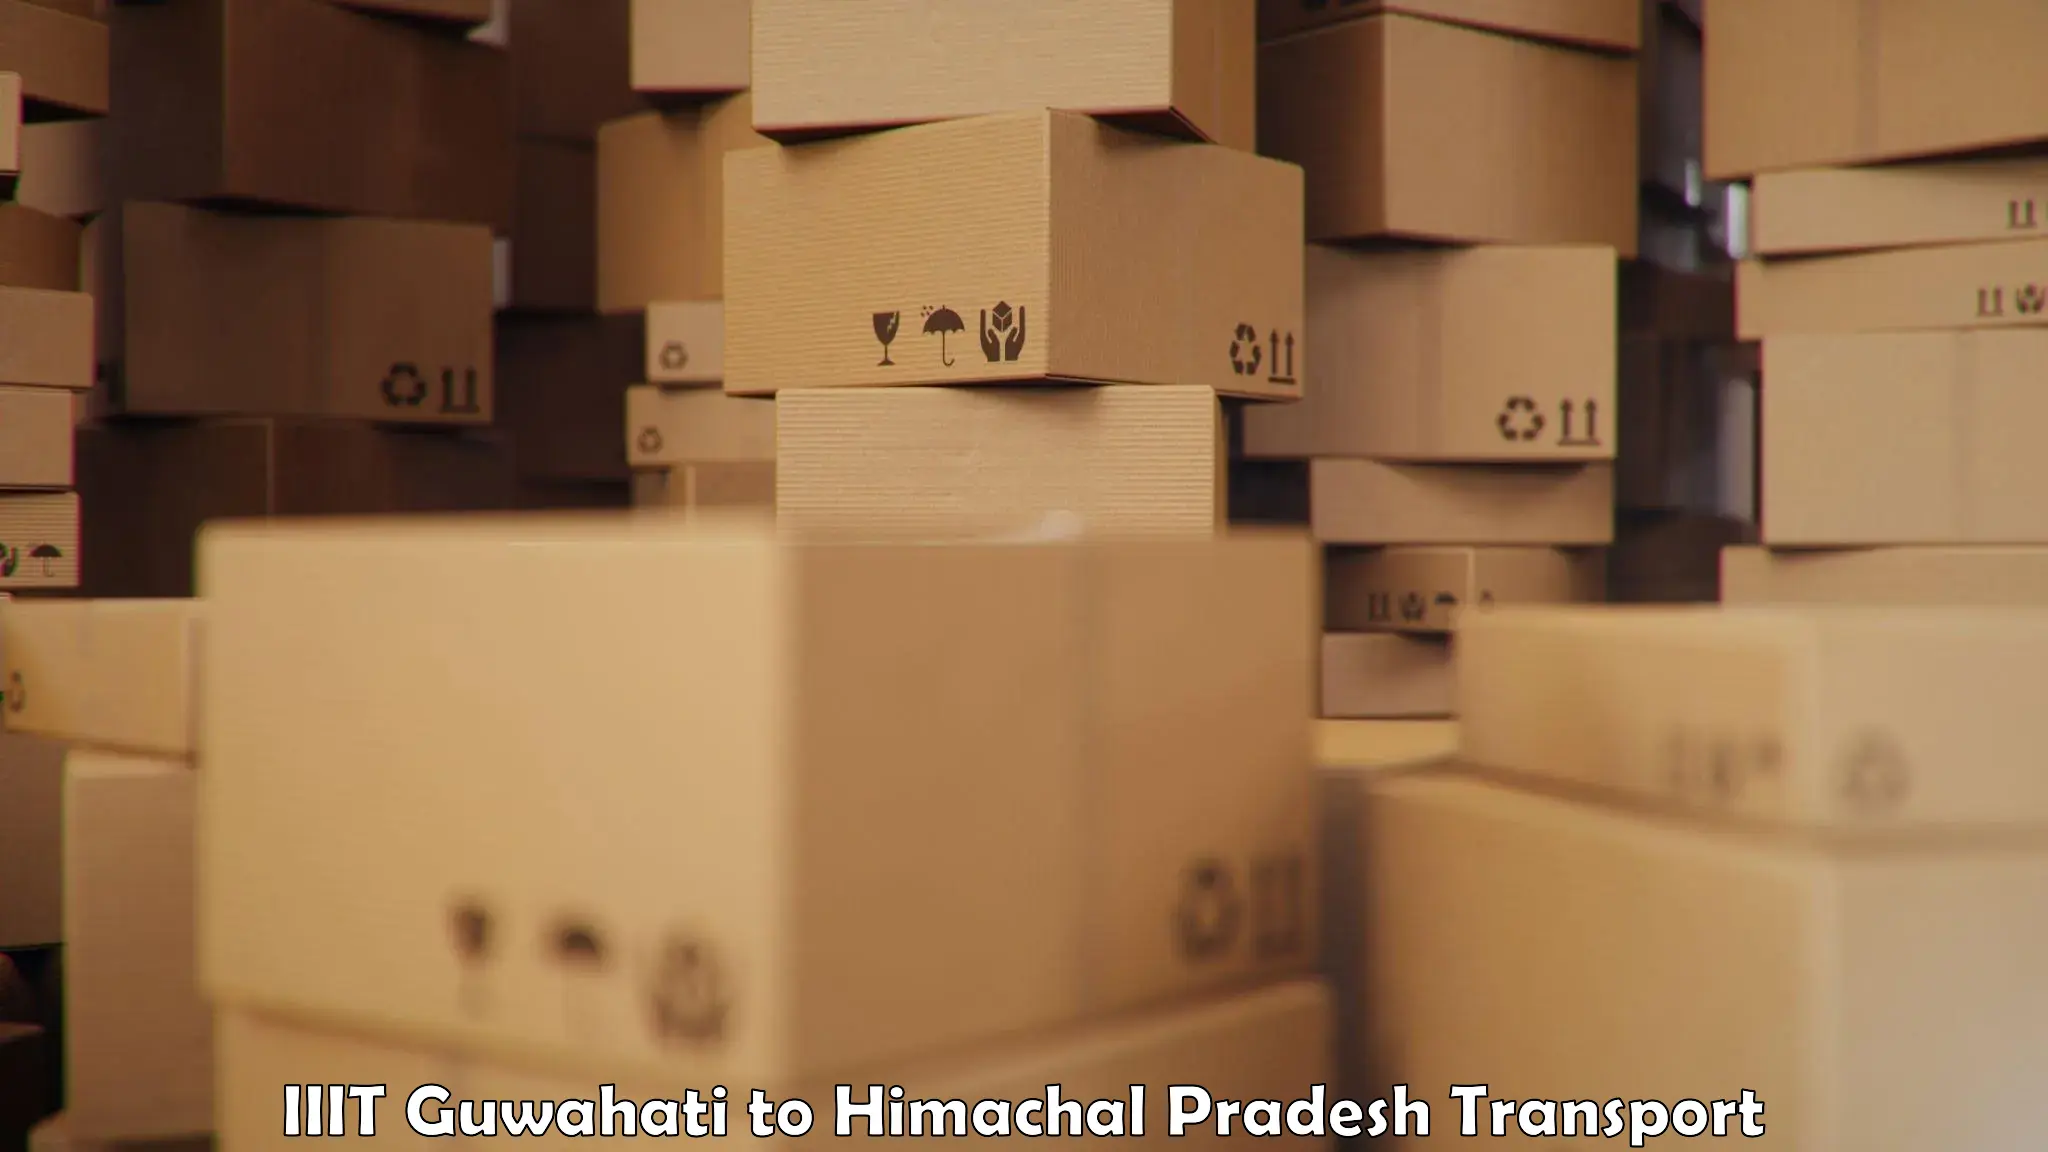 Cargo train transport services IIIT Guwahati to Bilaspur Himachal Pradesh